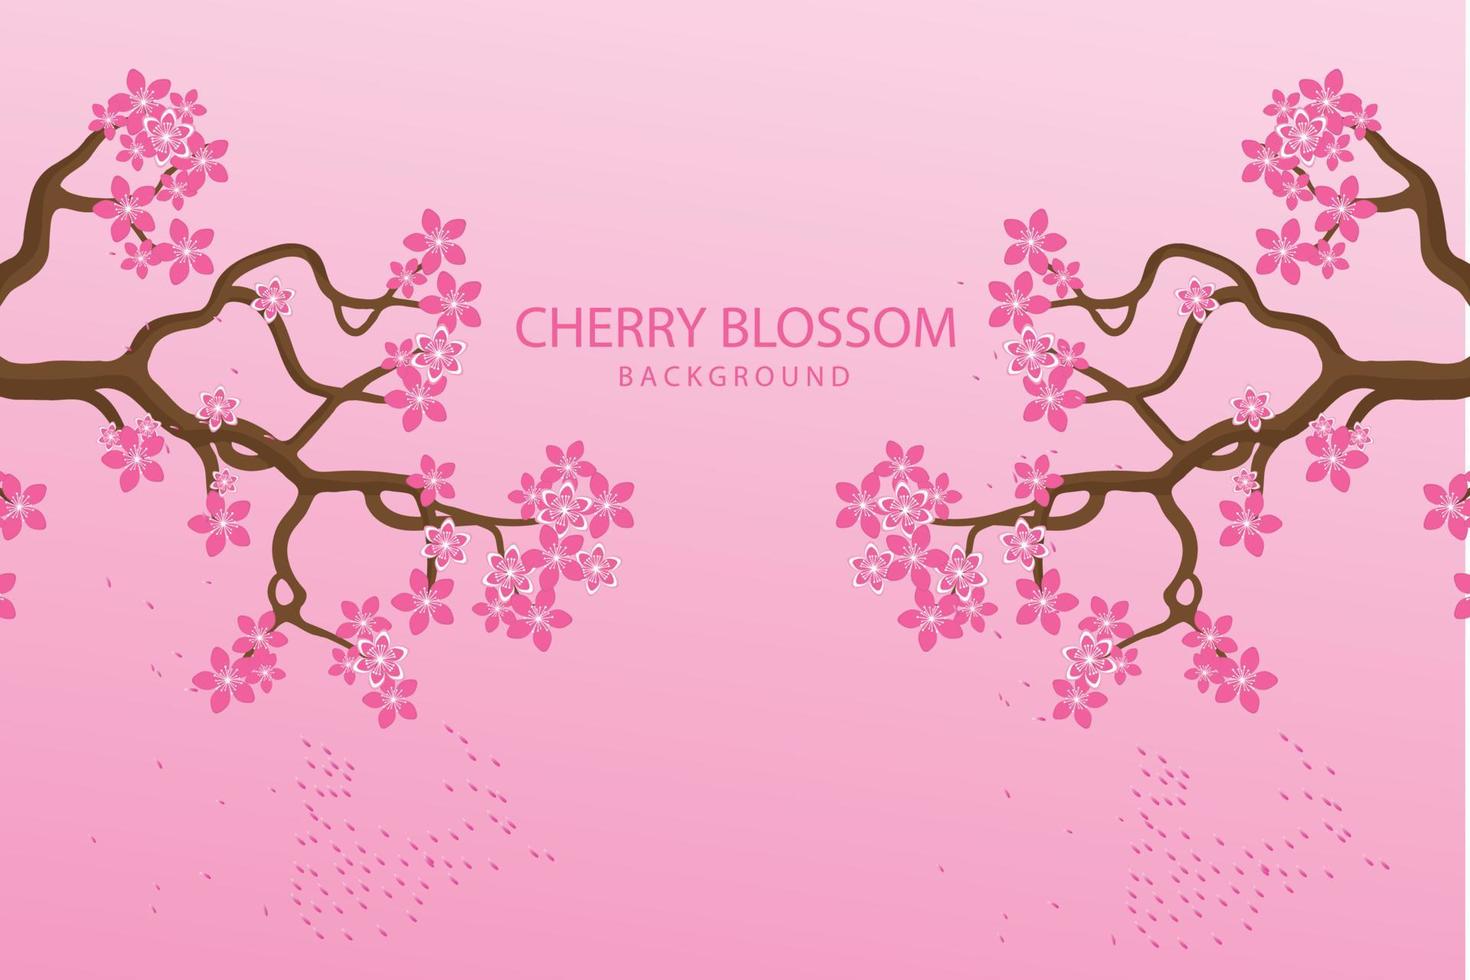 Kirschblüten-Hintergrunddesign. kostenloser Vektor schöner Kirschblütenhintergrund